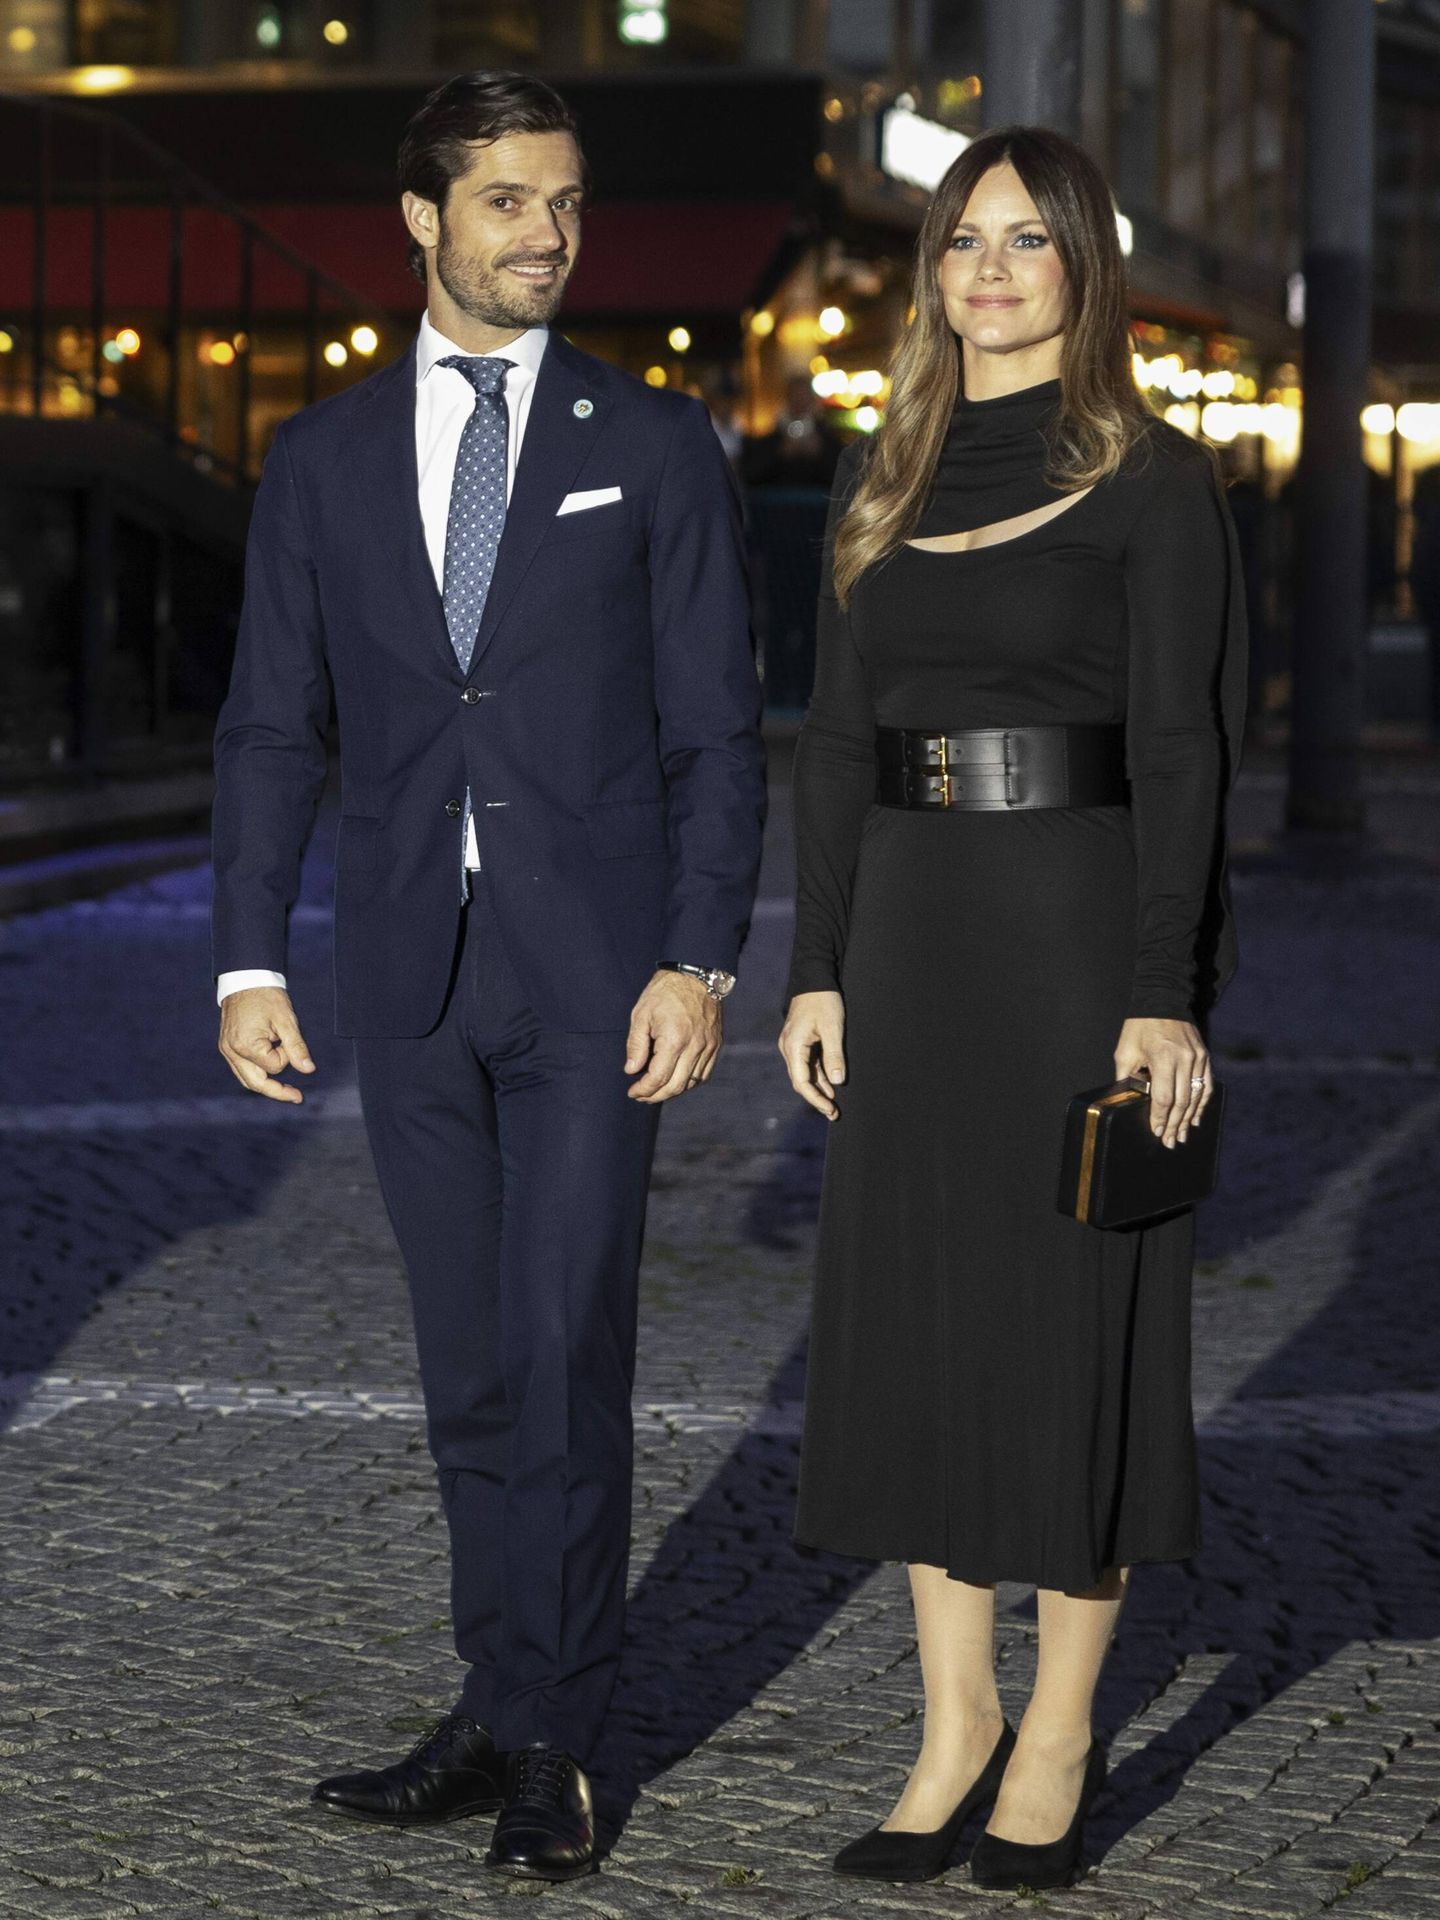 La princesa Sofía, a su llegada al concierto por la noche junto al príncipe Carlos Felipe. (Cordon Press/Nils Petter Nilsson)